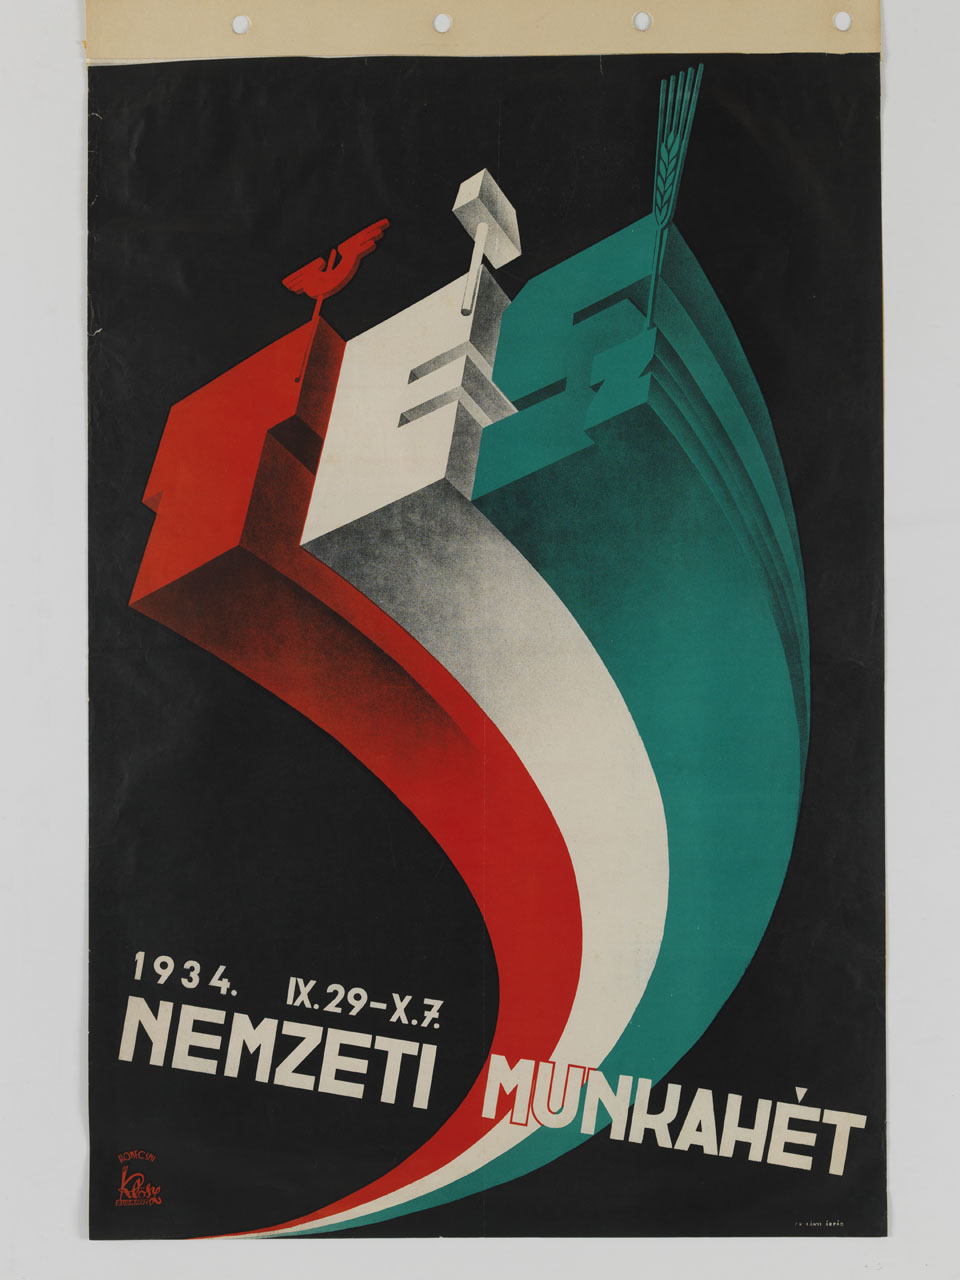 lettere tridimensionali T E Sz accompagnate da ali spiegate, martello e spiga di grano formano la bandiera ungherese (manifesto) di Konecsni György (sec. XX)